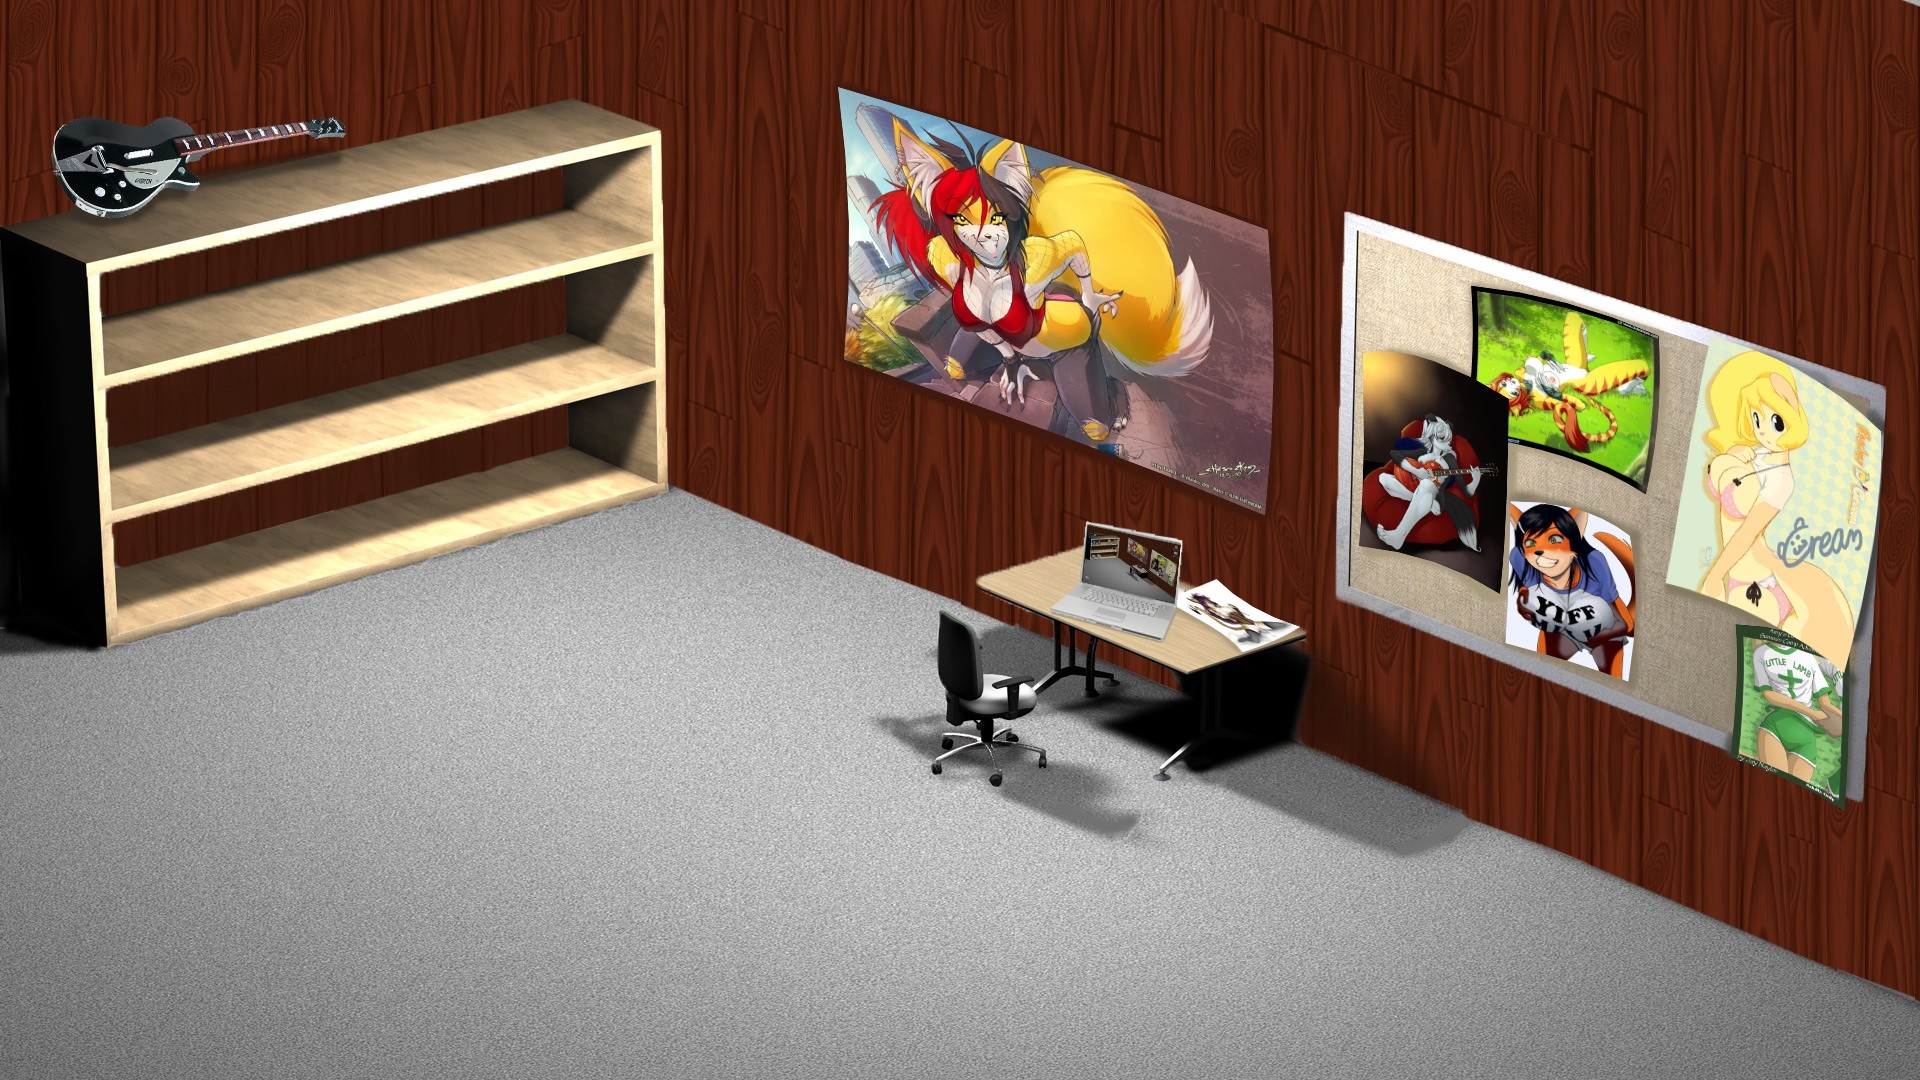 1920x1080, Modern Interior Wall Design Ideas Abstract - Desktop Office Wallpaper Hd - HD Wallpaper 